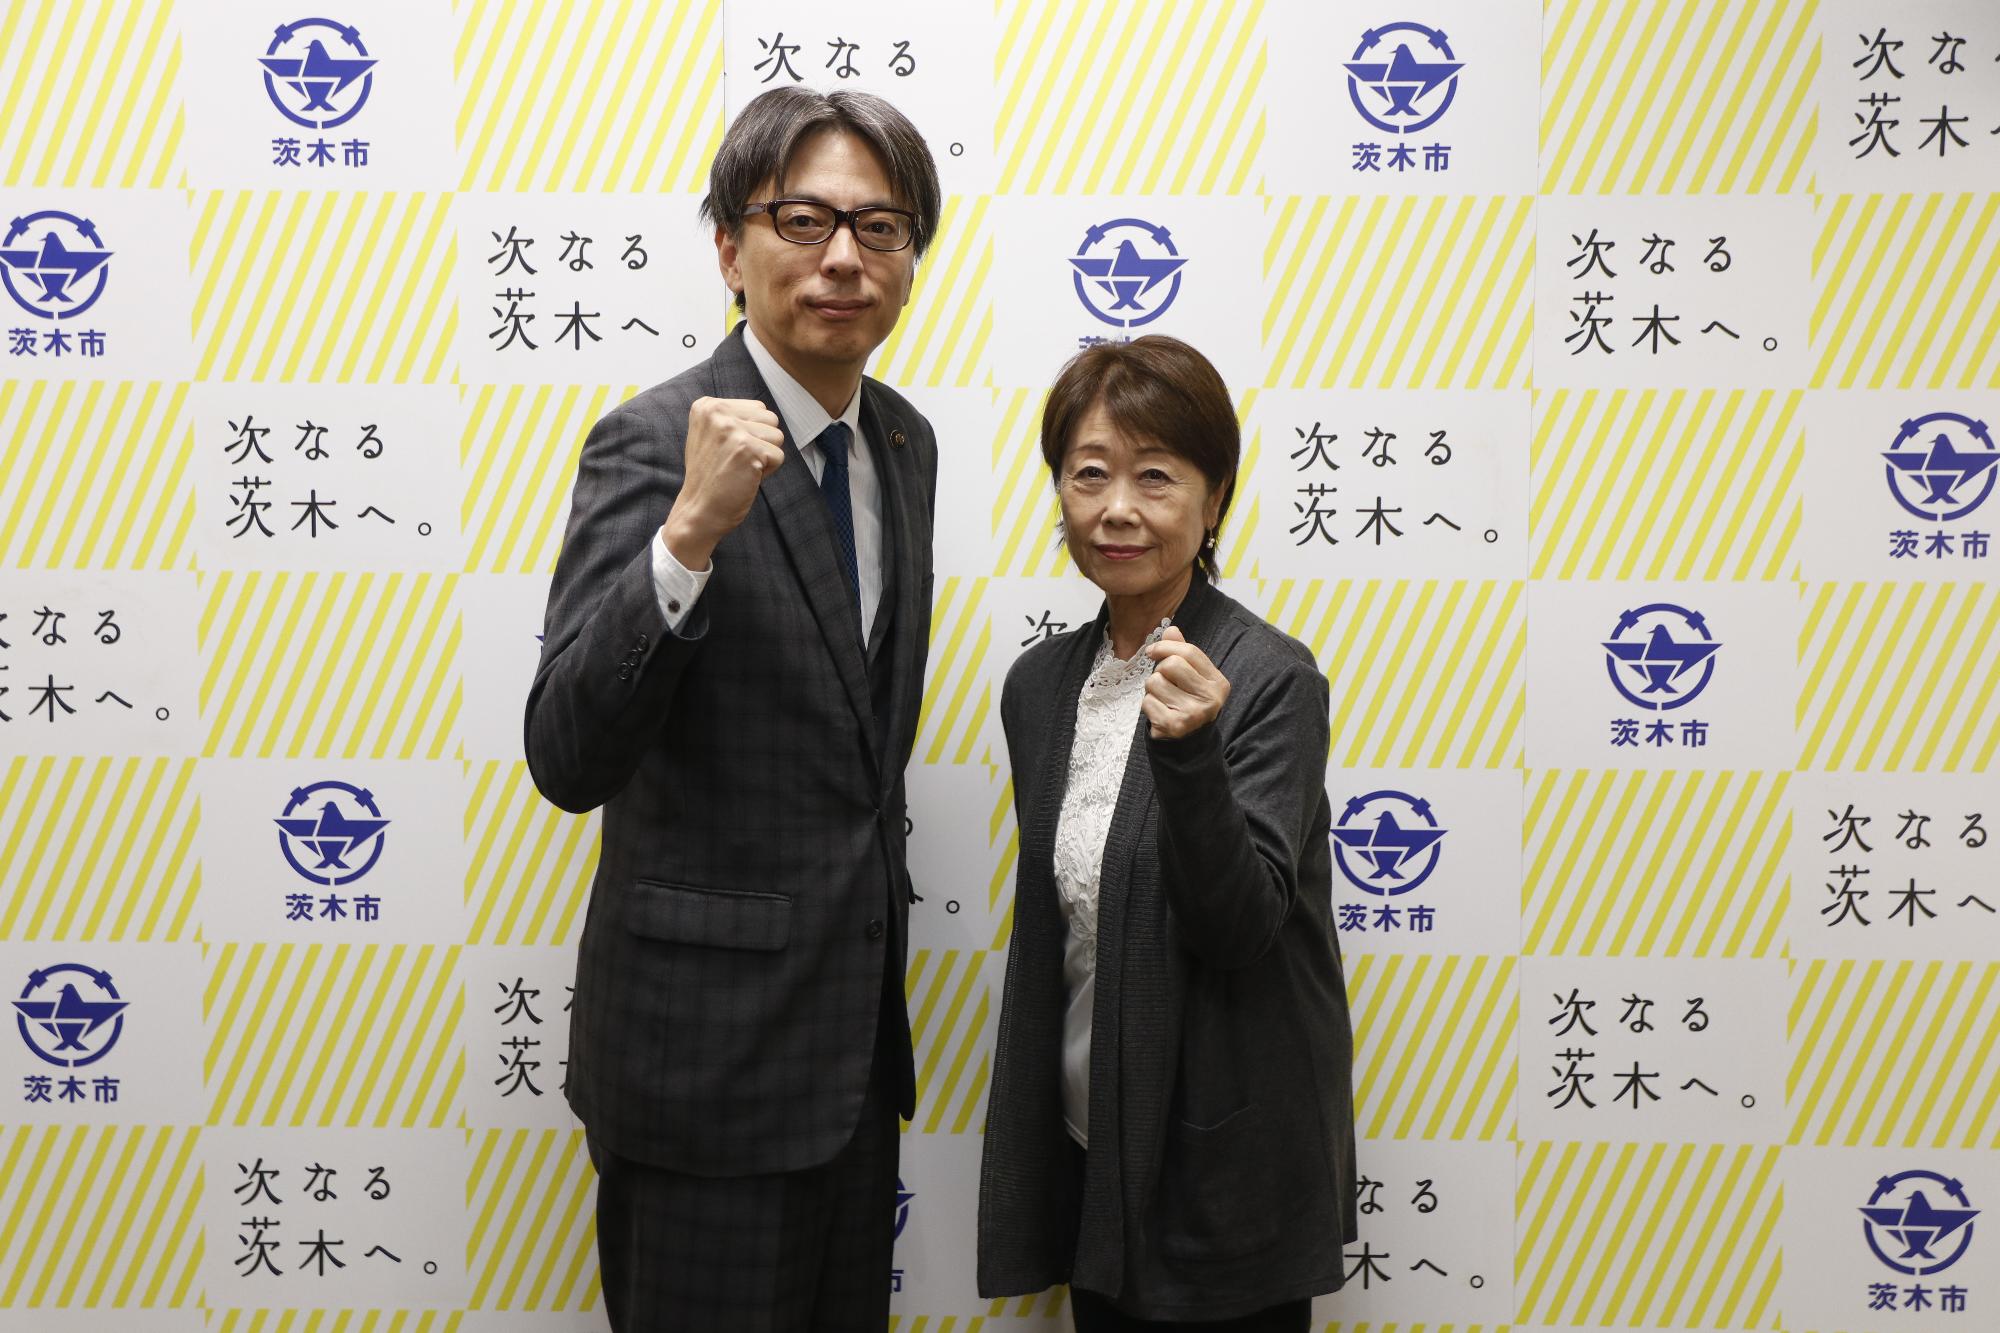 大坪 雅子さんとガッツポーズをする市長の写真